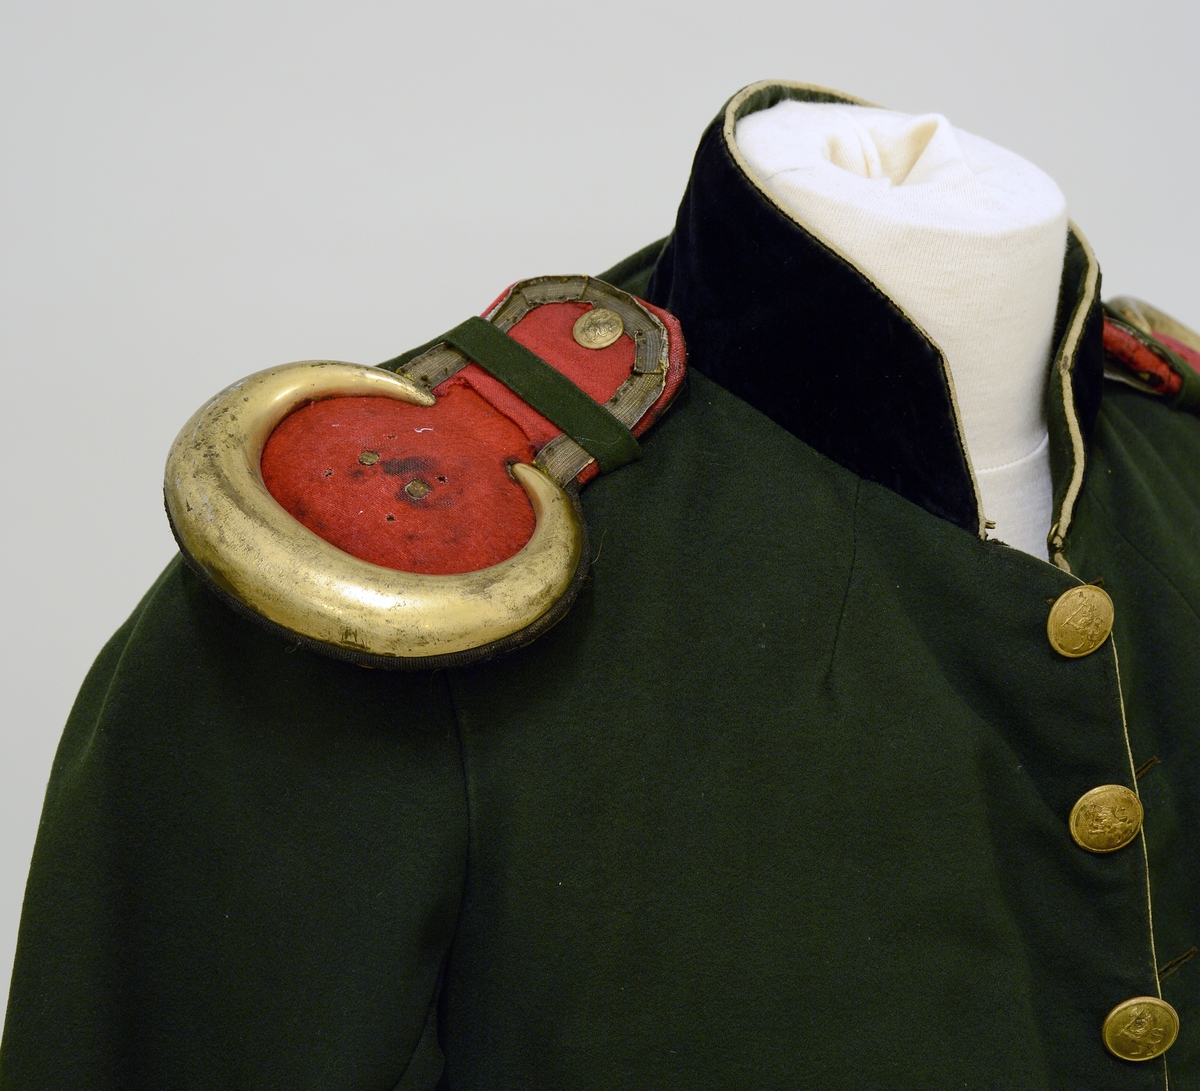 Uniformsjakke. Med epauletter for Skiens borgerkorps. Olivengrøn, røde epauletter med messingkanter og messingknapper. Fra protokoll.